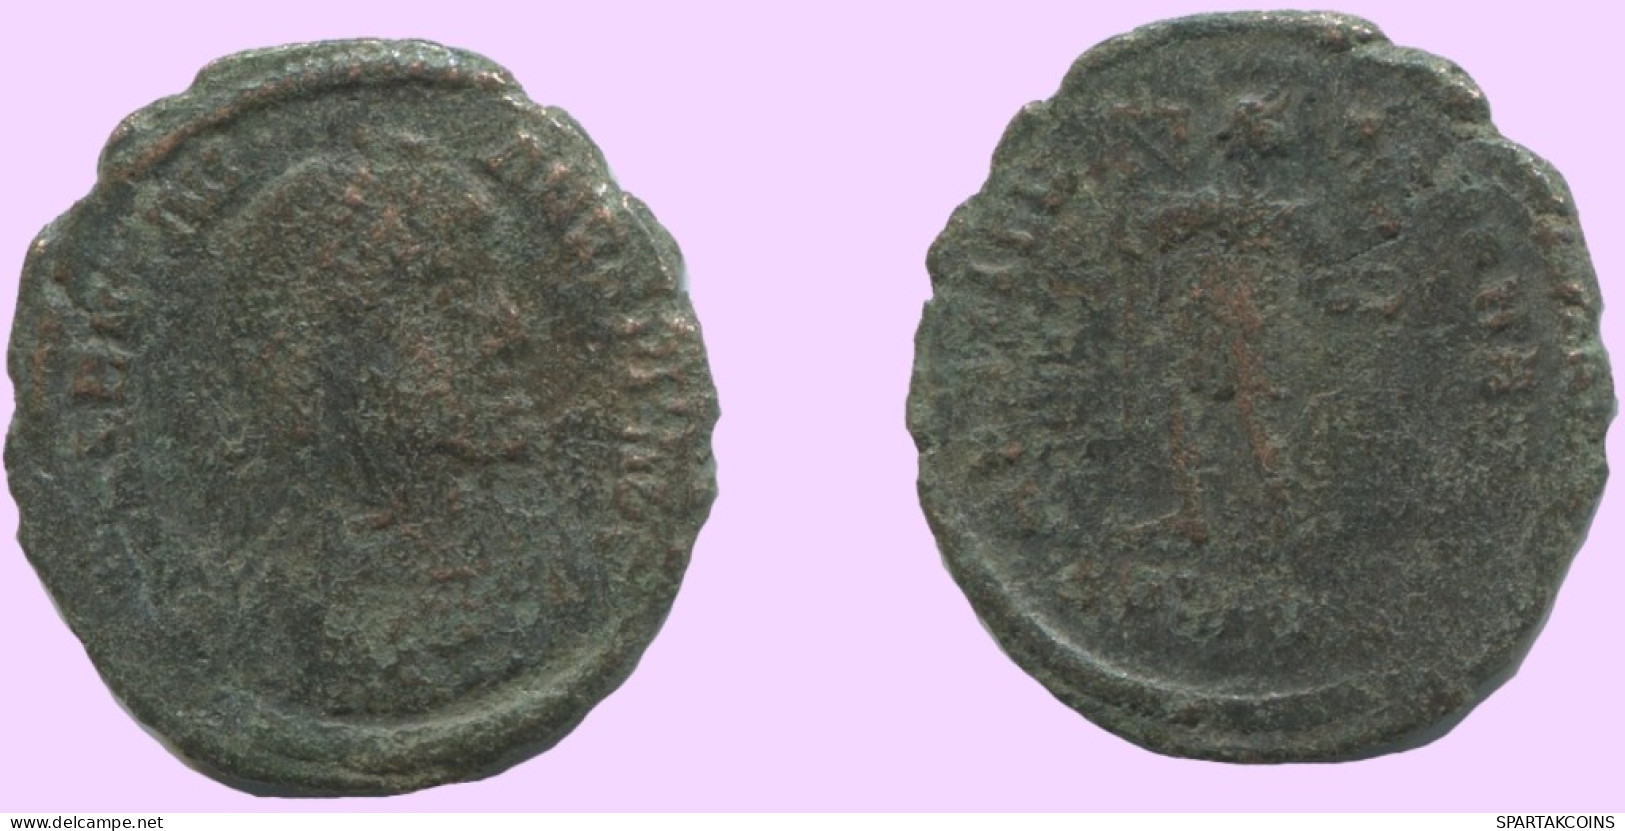 LATE ROMAN EMPIRE Follis Ancient Authentic Roman Coin 2g/17mm #ANT1962.7.U.A - The End Of Empire (363 AD Tot 476 AD)